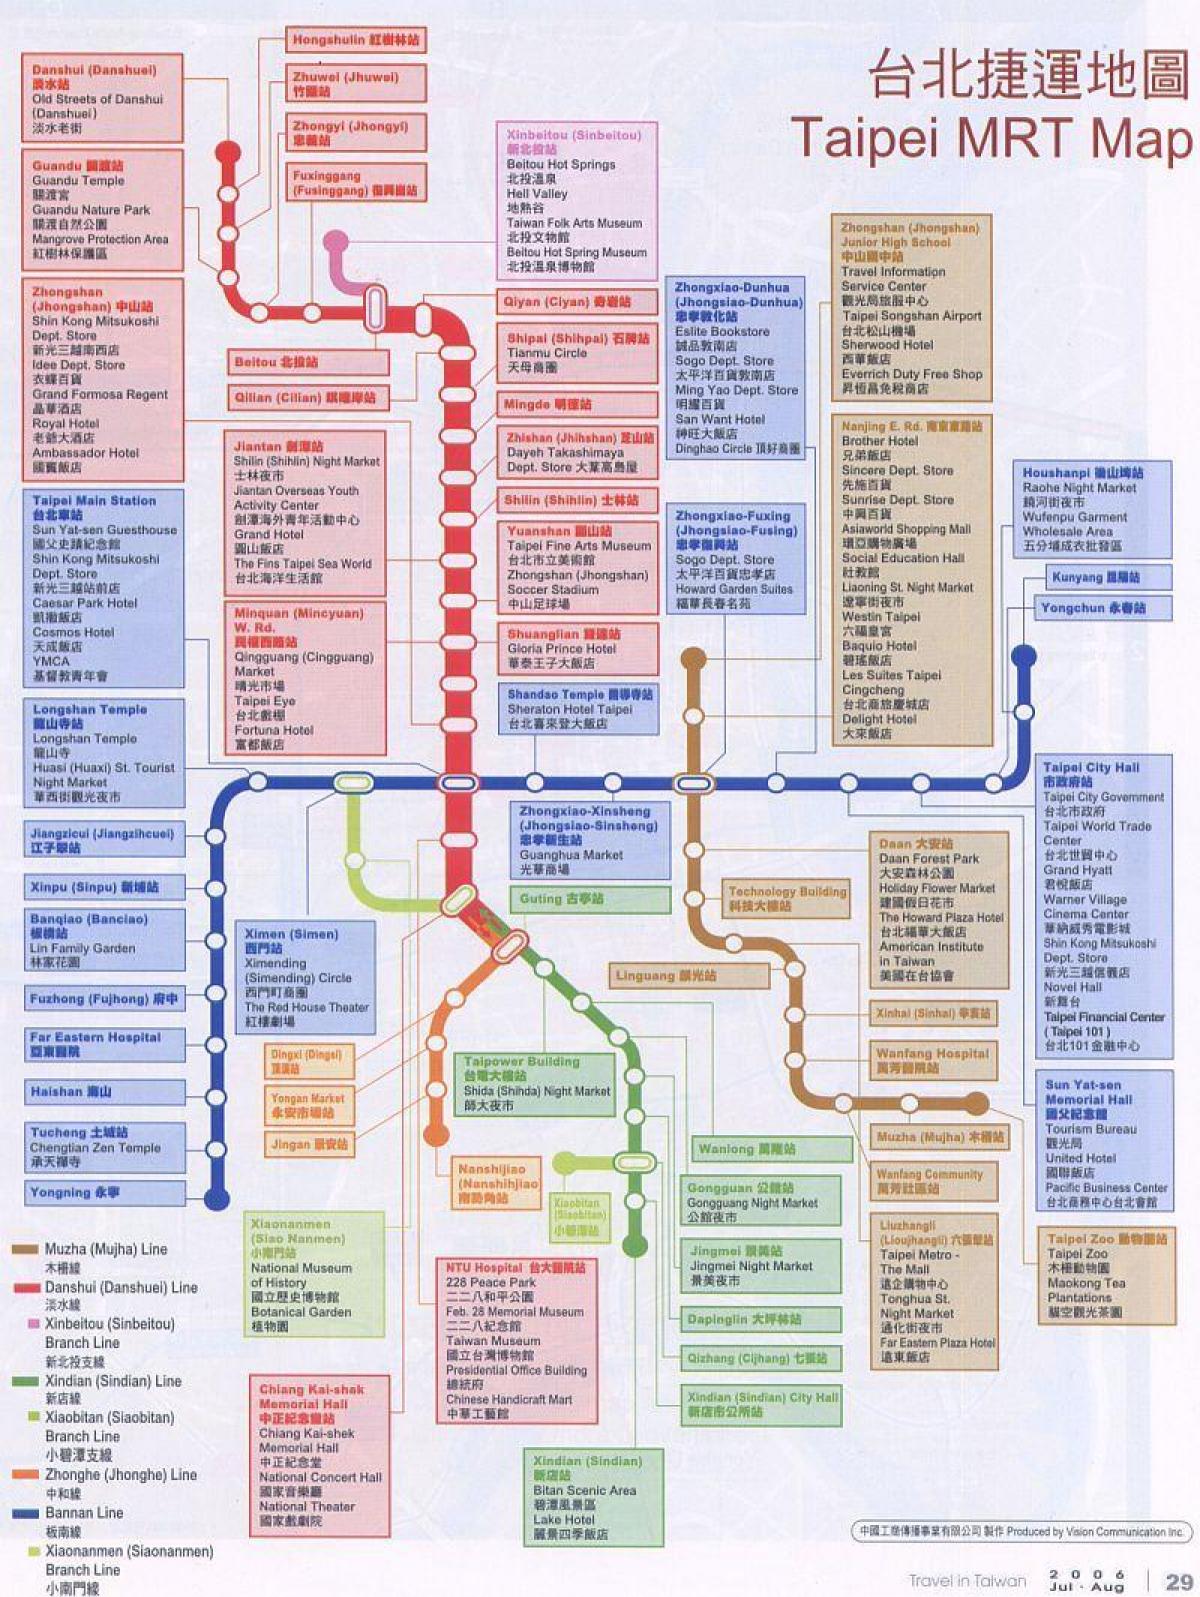 карта Тайбэй MRT карта и достопримечательности